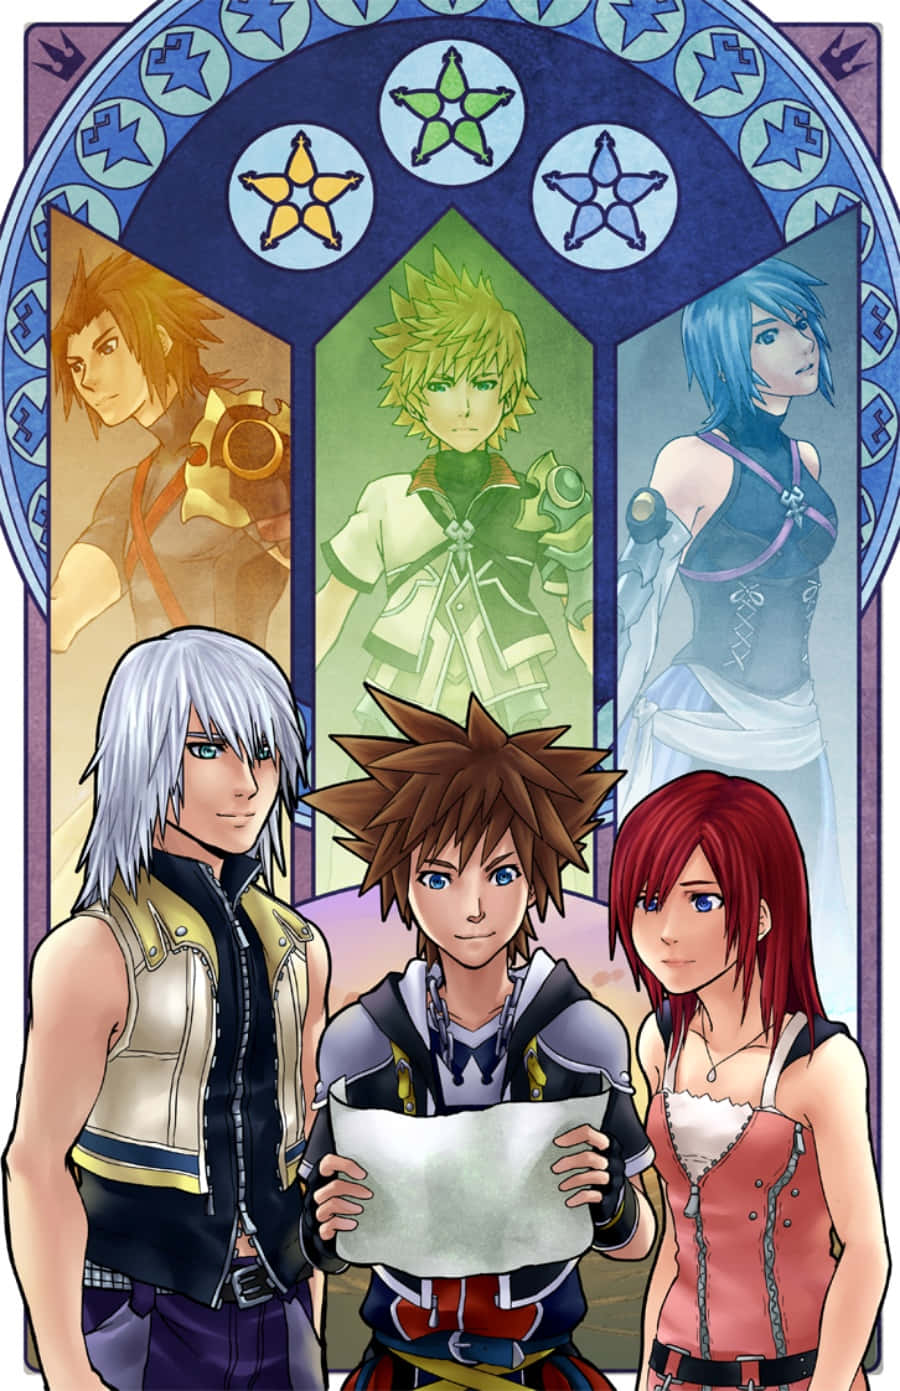 Tag på en episk rejse med Sora og venner i Kingdom Hearts